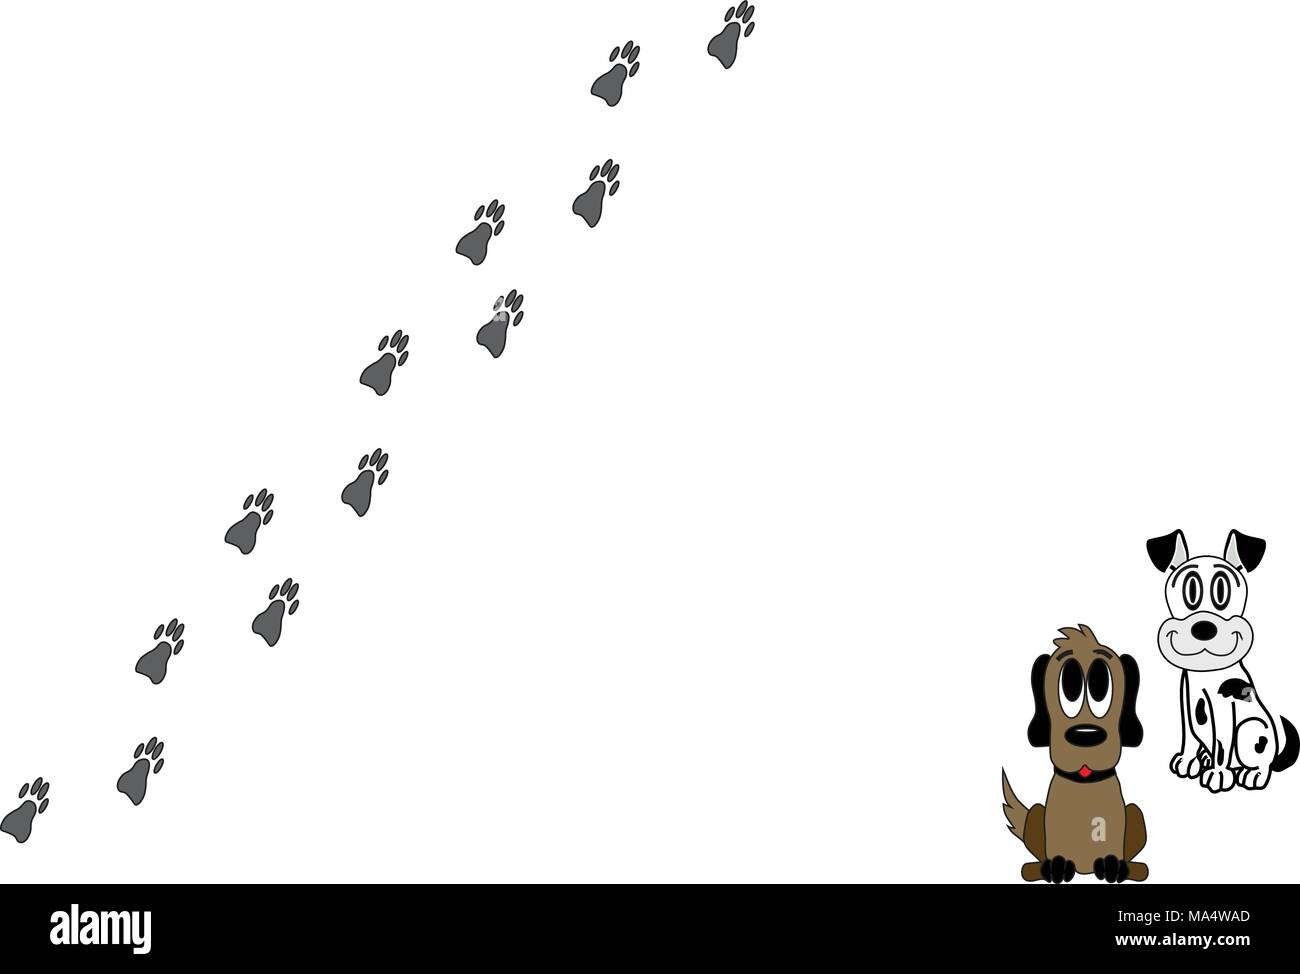 Chiens chiot illustré avec empreintes de pattes de chien sur fond blanc avec l'exemplaire de l'espace. Illustration de Vecteur